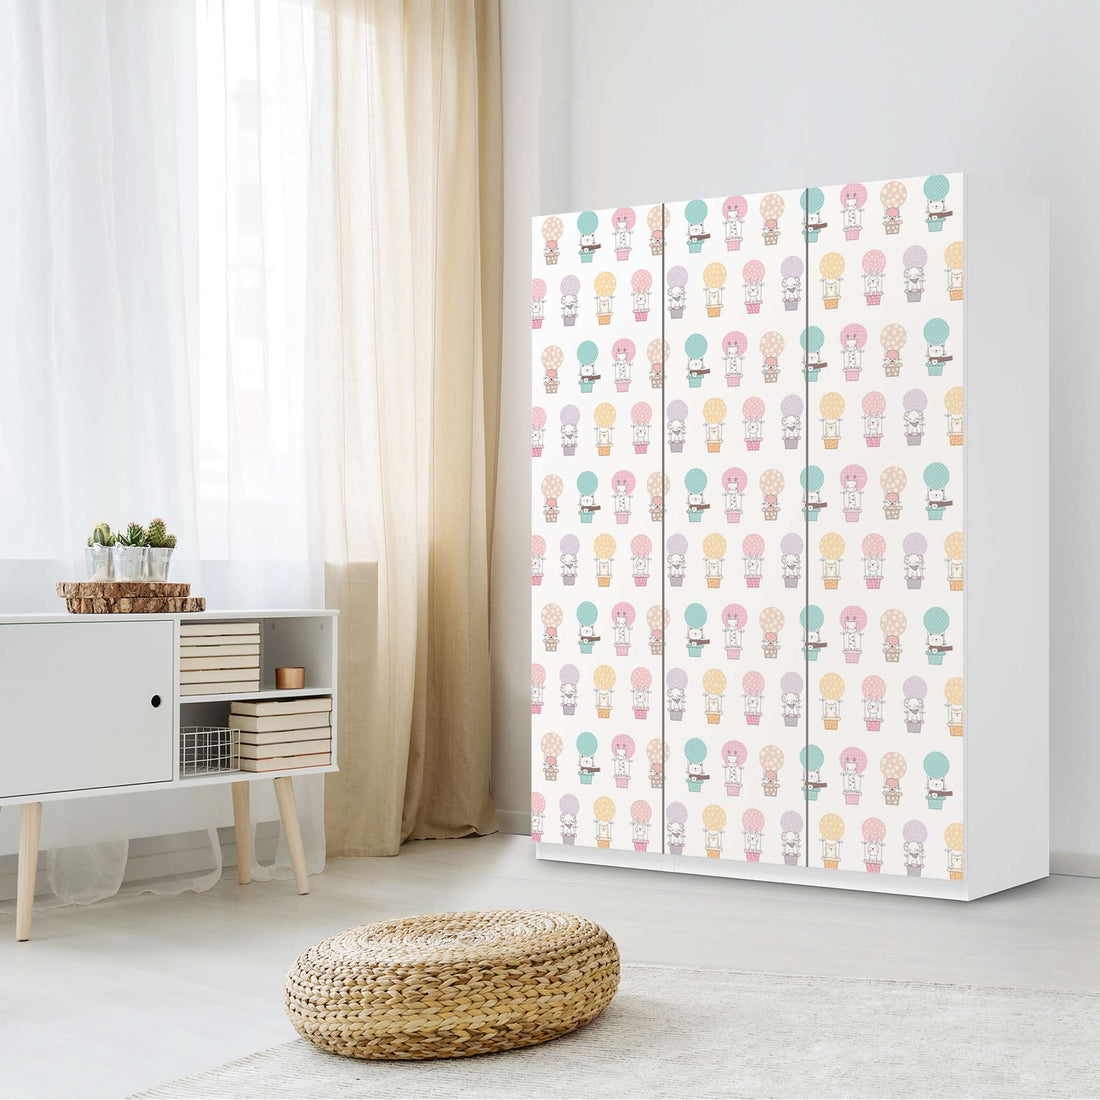 Folie für Möbel Flying Animals - IKEA Pax Schrank 201 cm Höhe - 3 Türen - Kinderzimmer